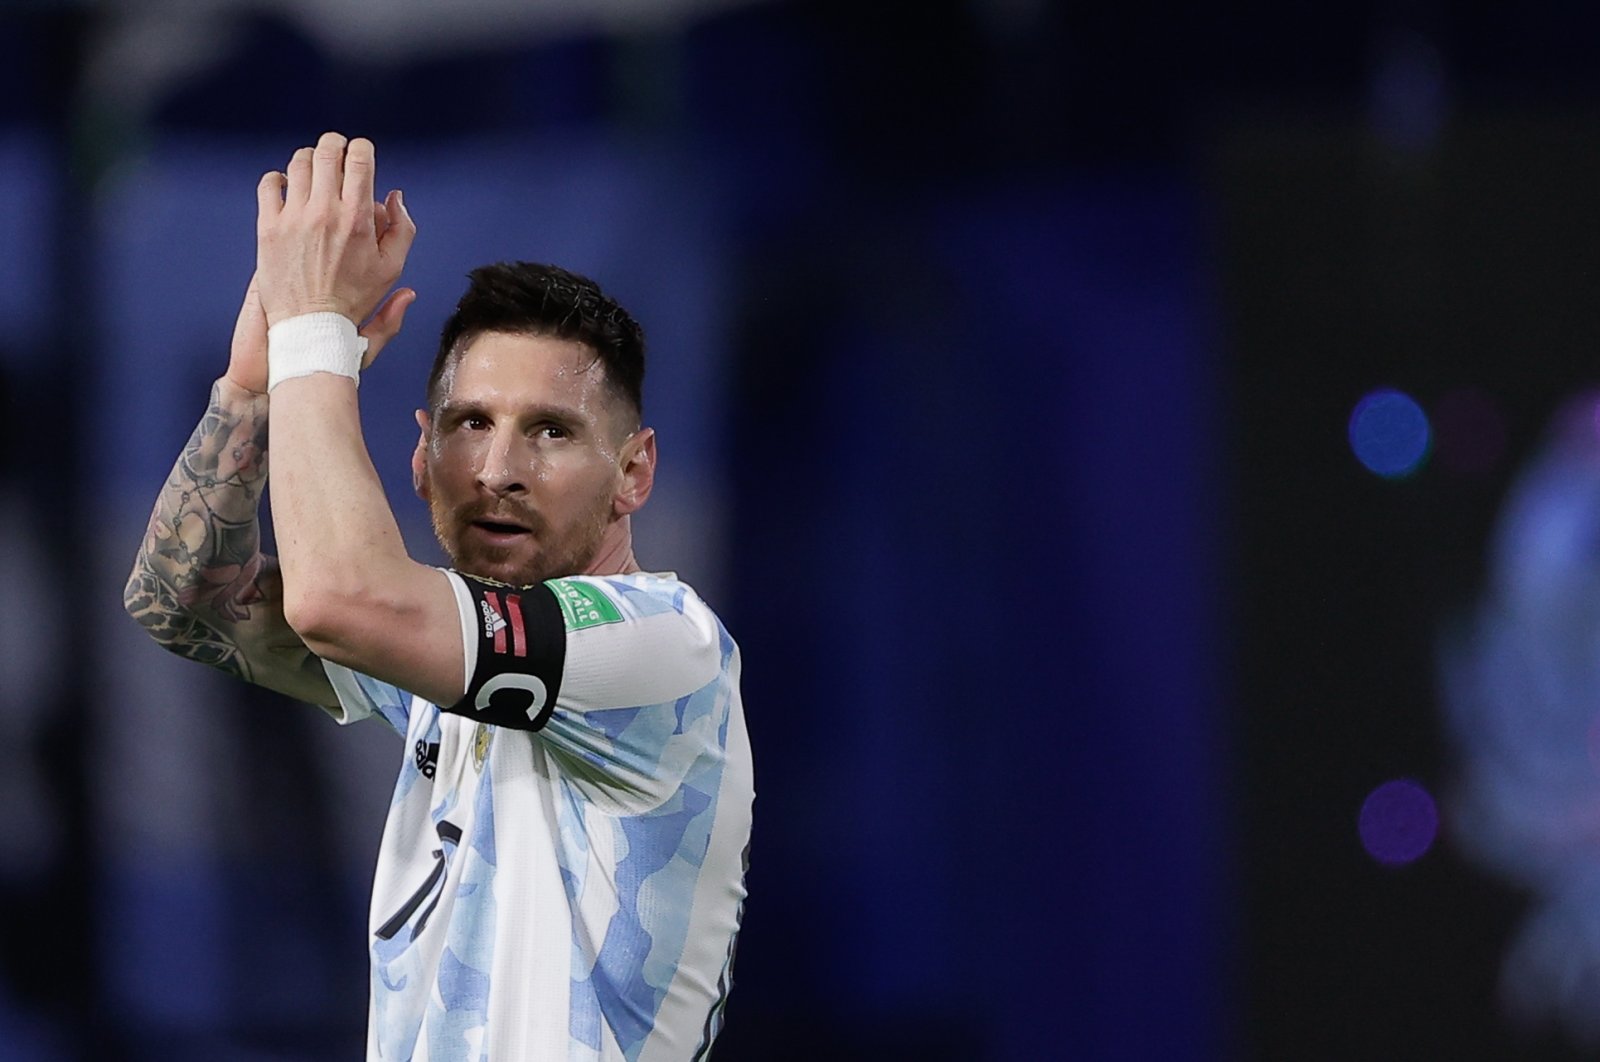 ‘Nikmati Messi selagi bisa,’ kata pelatih Argentina kepada fans